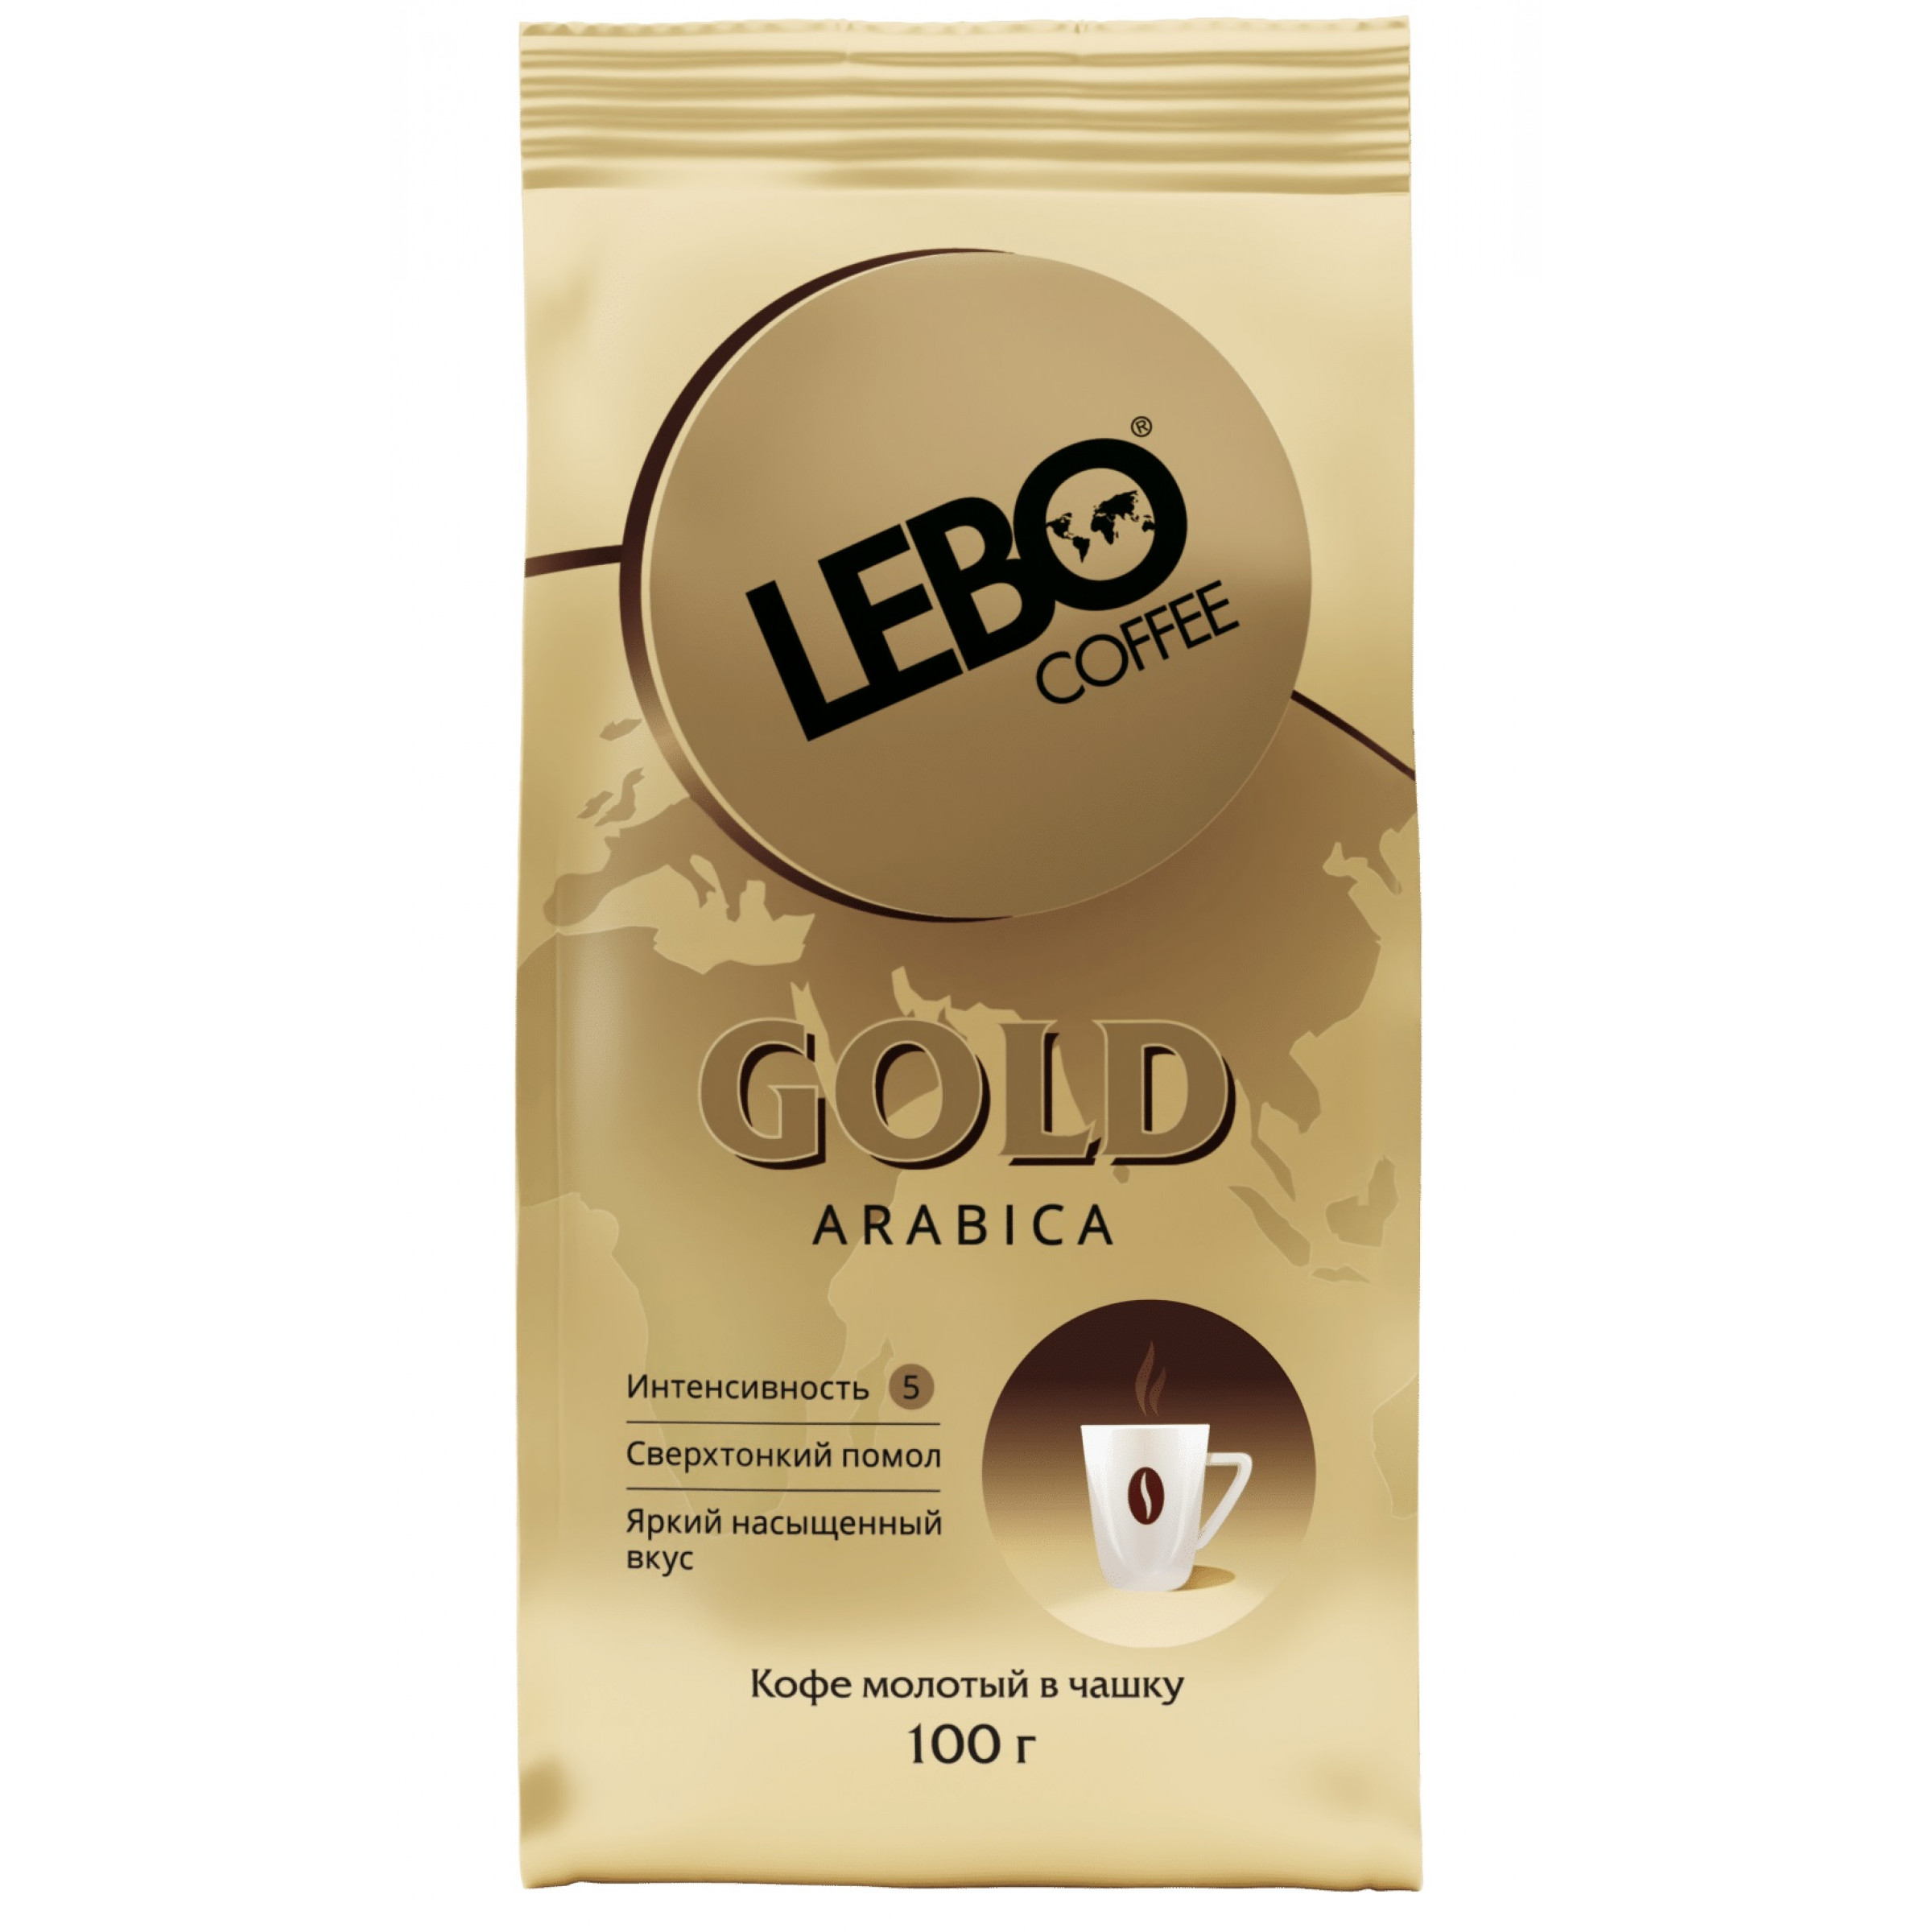 Кофе LEBO GOLD молотый для заваривания в чашке, 100 г